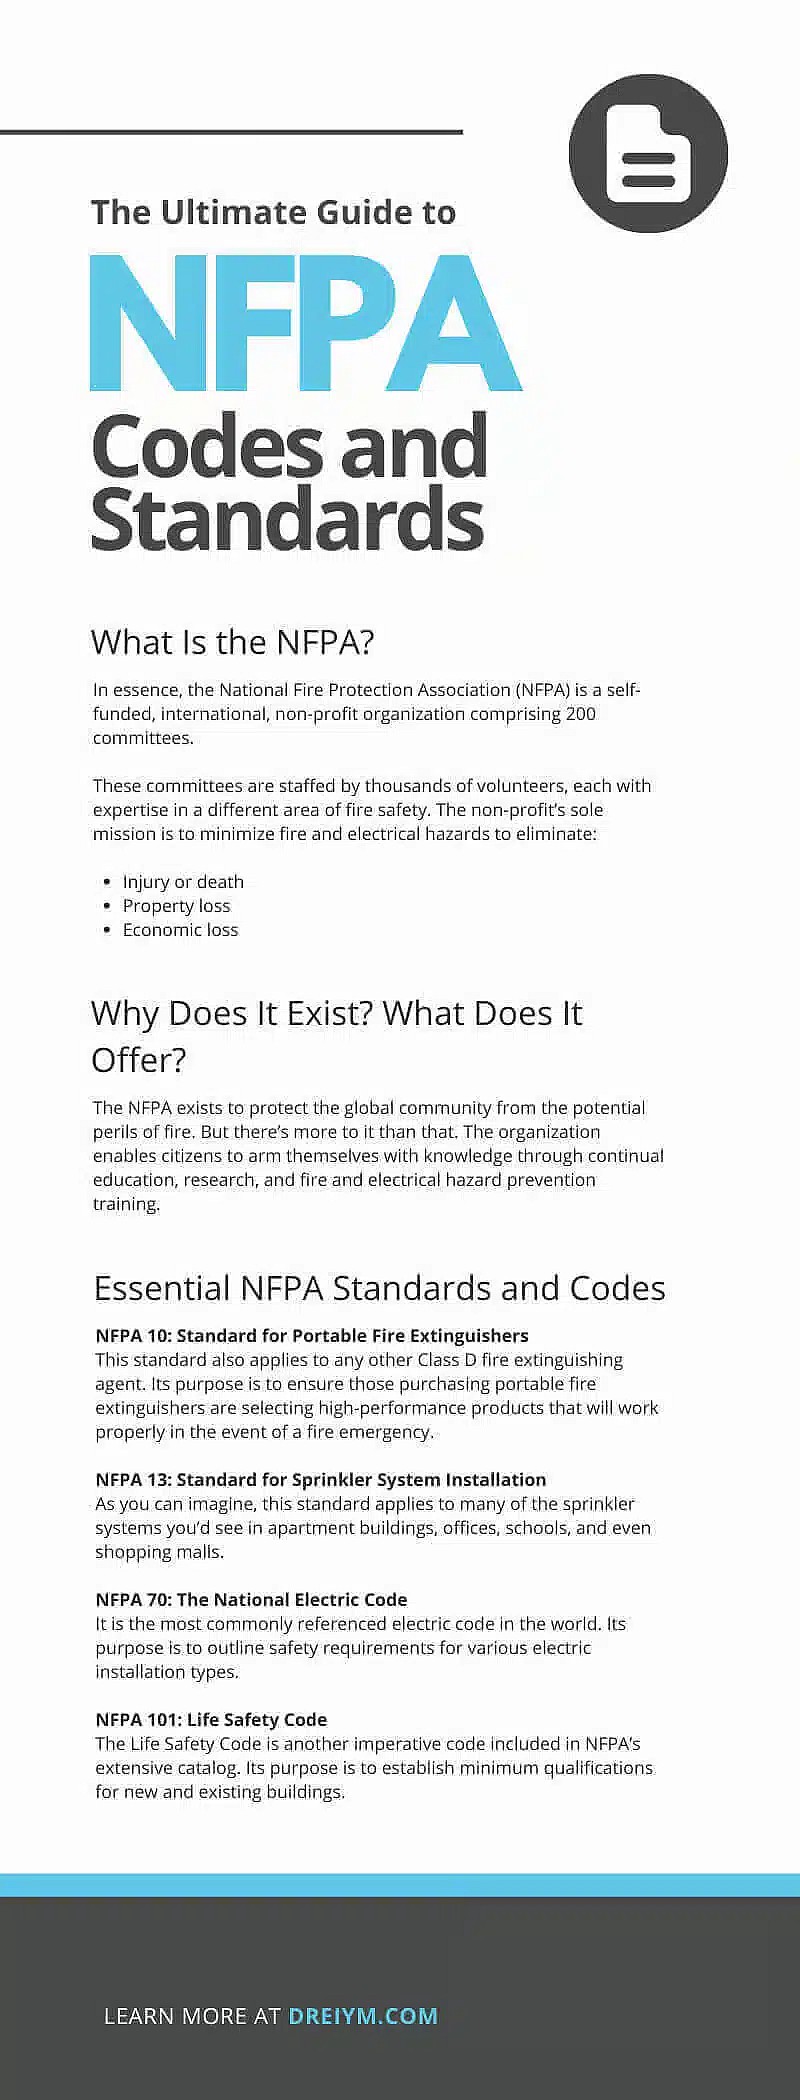 La guía definitiva de los códigos y normas de la NFPA